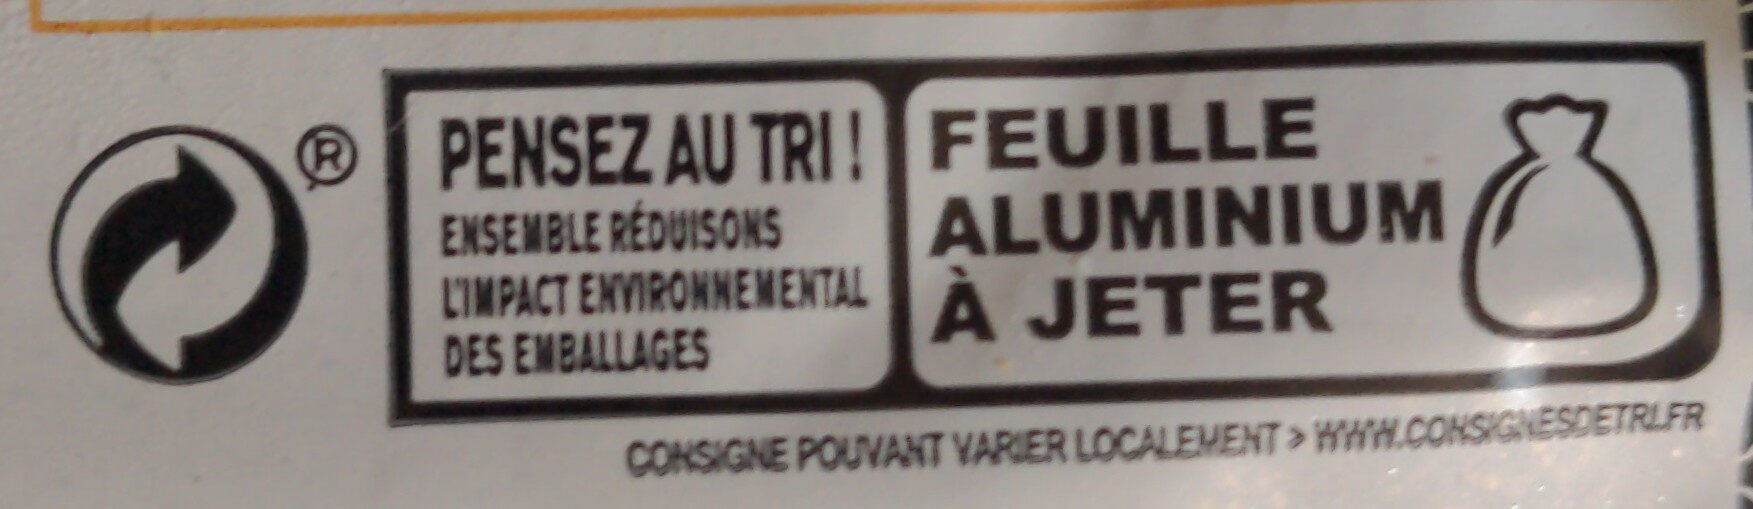 Beurre de Bretagne à la crème maturée demi-sel - Recycling instructions and/or packaging information - fr